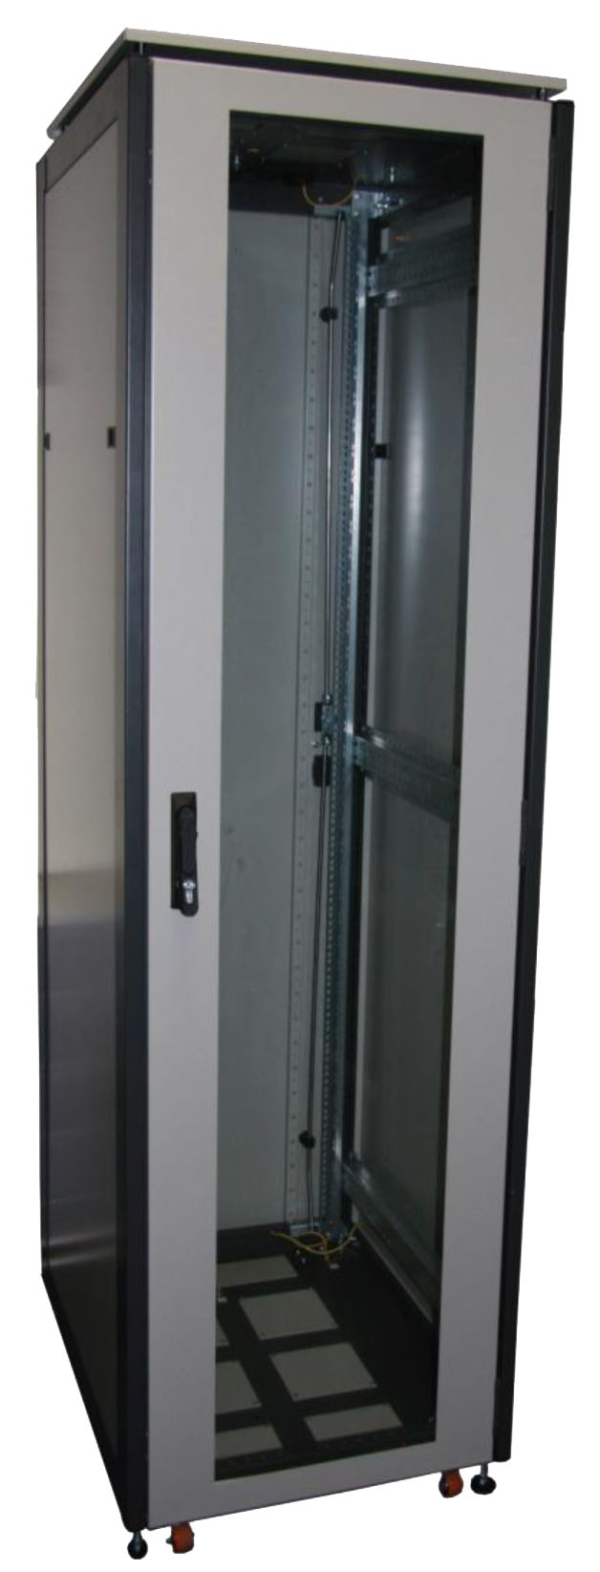 ССКТБ ТОМАСС ШТК-6622Э-01 - шкаф телекоммуникационный 19", 47U, 600х600х2200 мм, с металлической задней панелью и стеклянной дверью